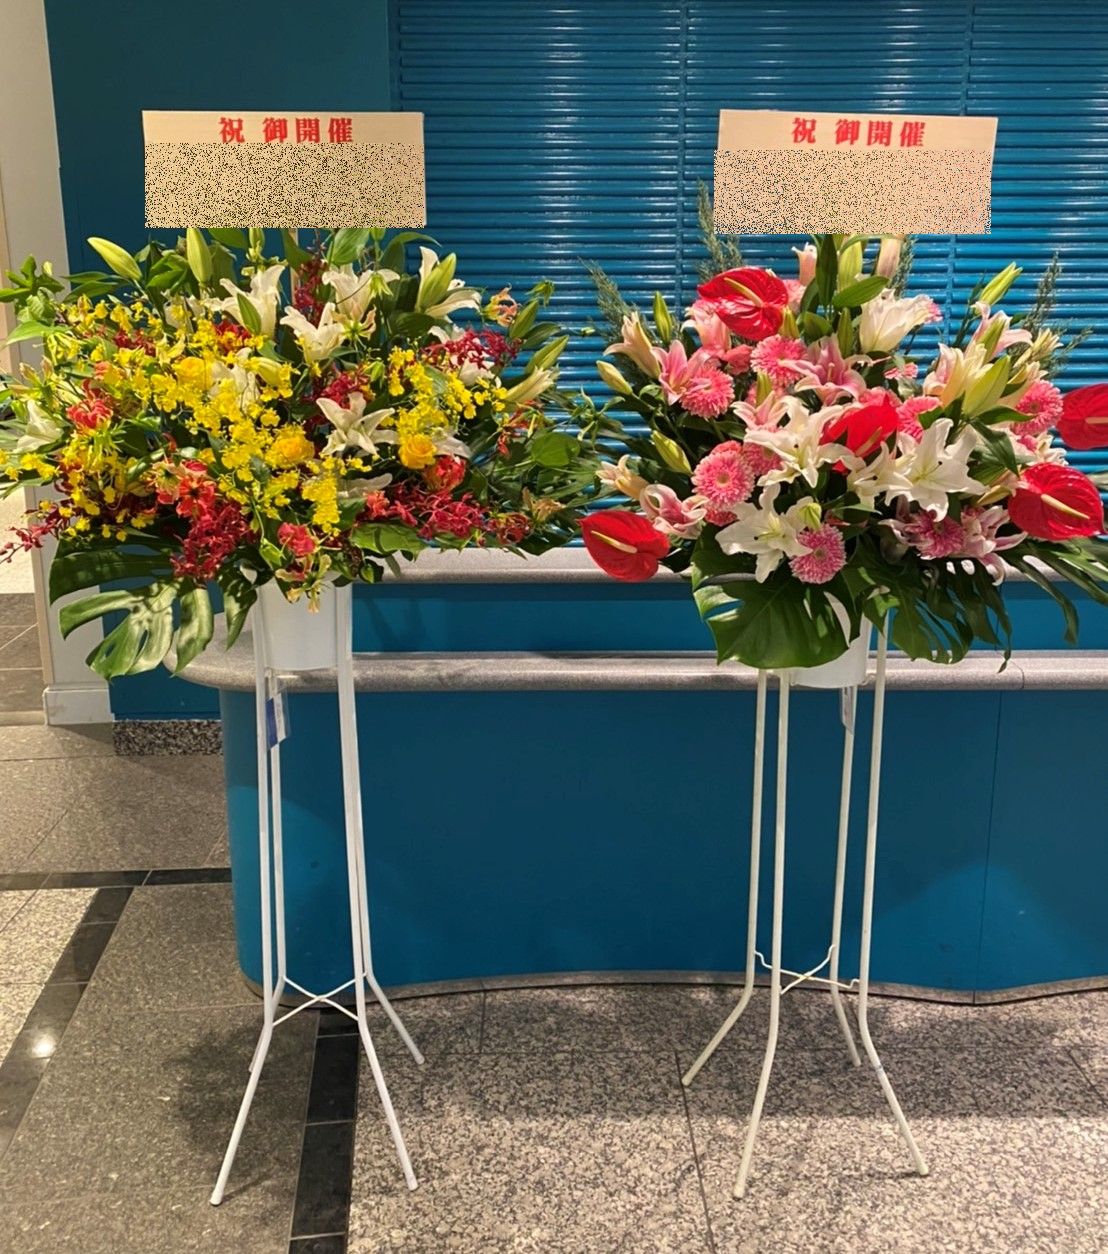 パシフィコ横浜へスタンド花を配達しました。【横浜花屋の花束・スタンド花・胡蝶蘭・バルーン・アレンジメント配達事例886】